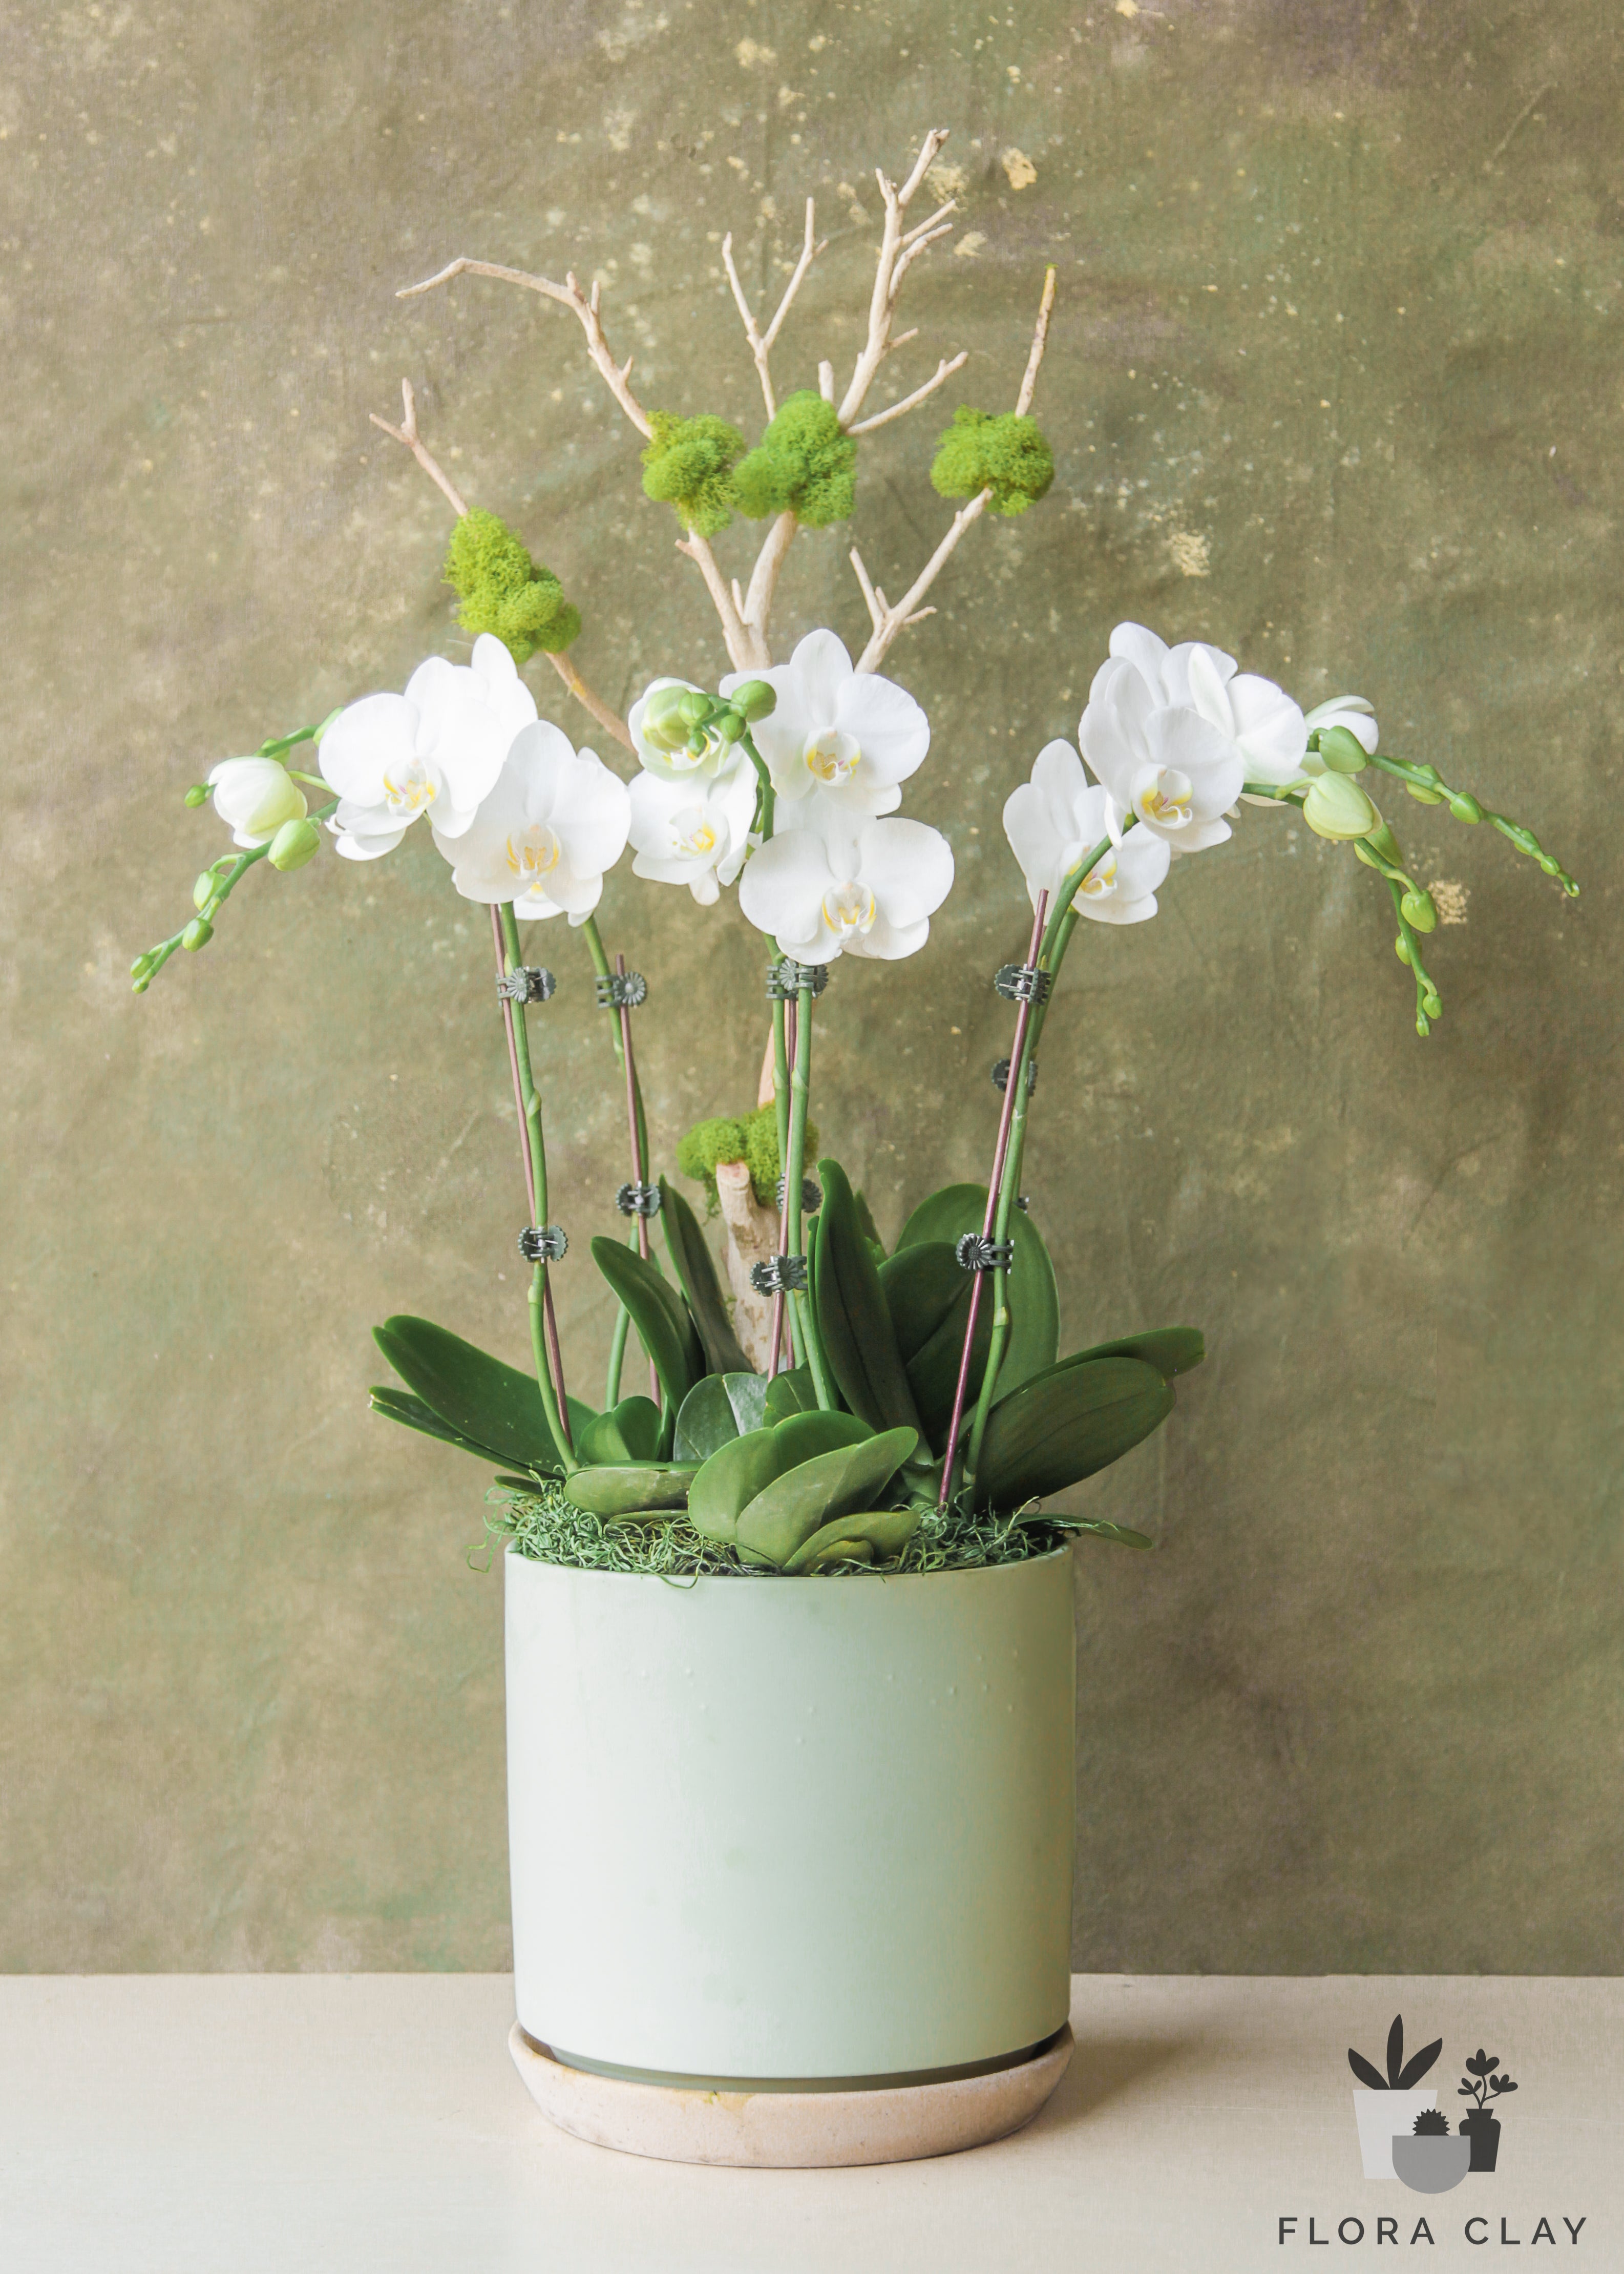 apple-mint-orchid-arrangement-floraclay-1.jpg